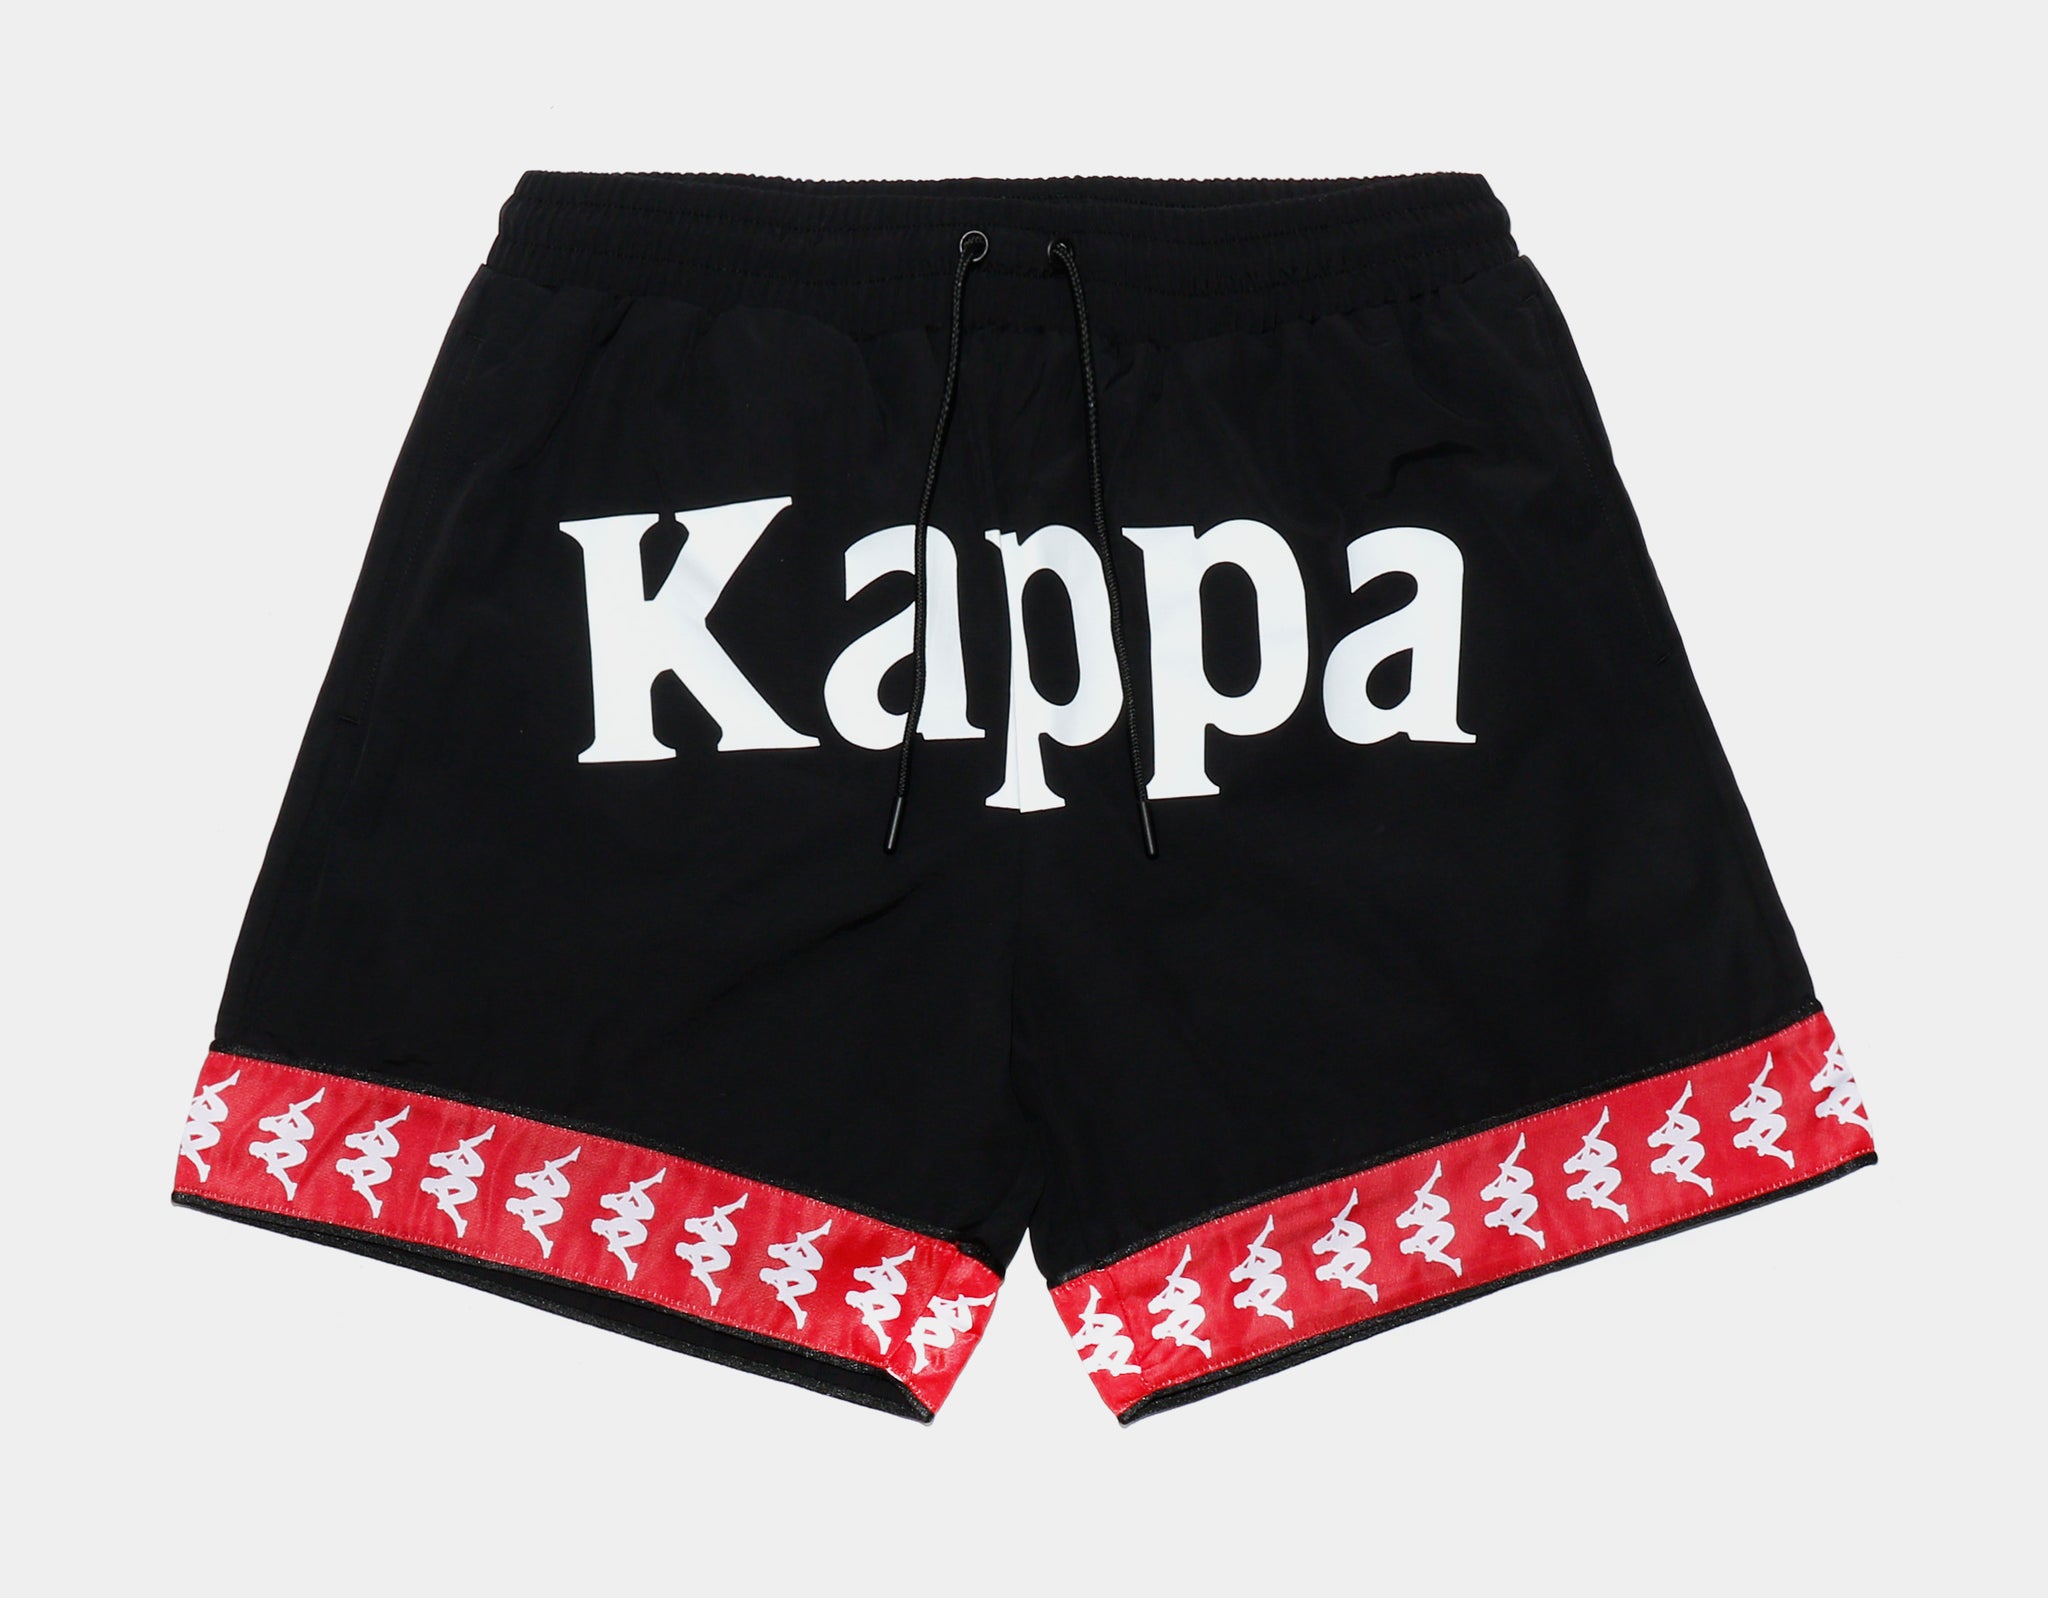 Kappa 222 Calabash 3 Shorts Mens Short Black Red – Shoe